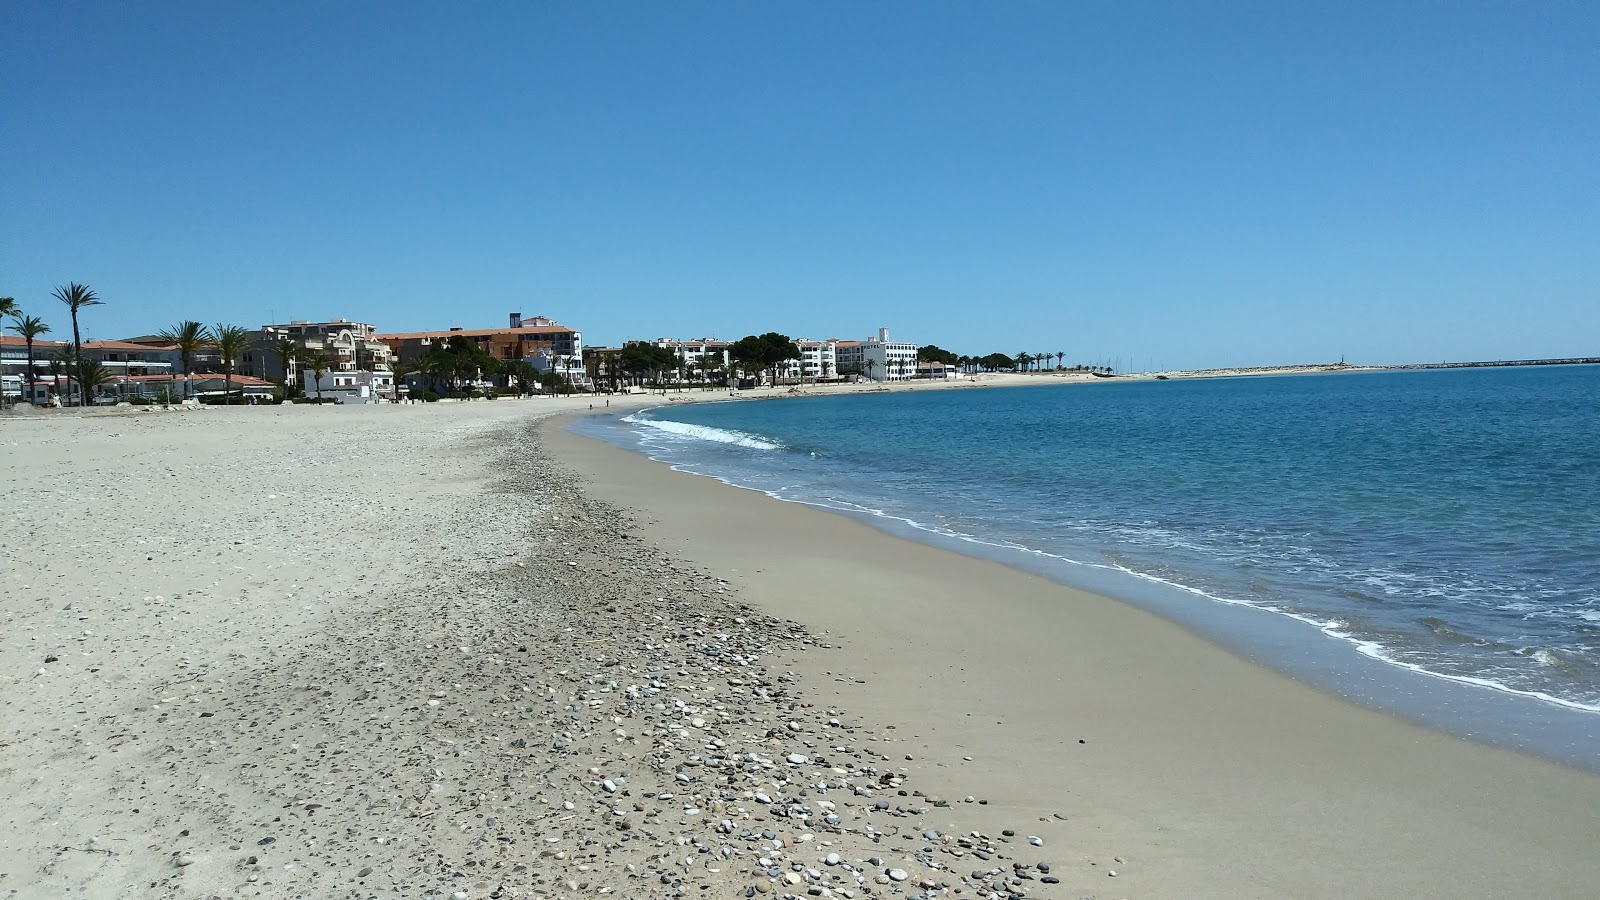 Fotografija L'Hospitalet beach z turkizna voda površino